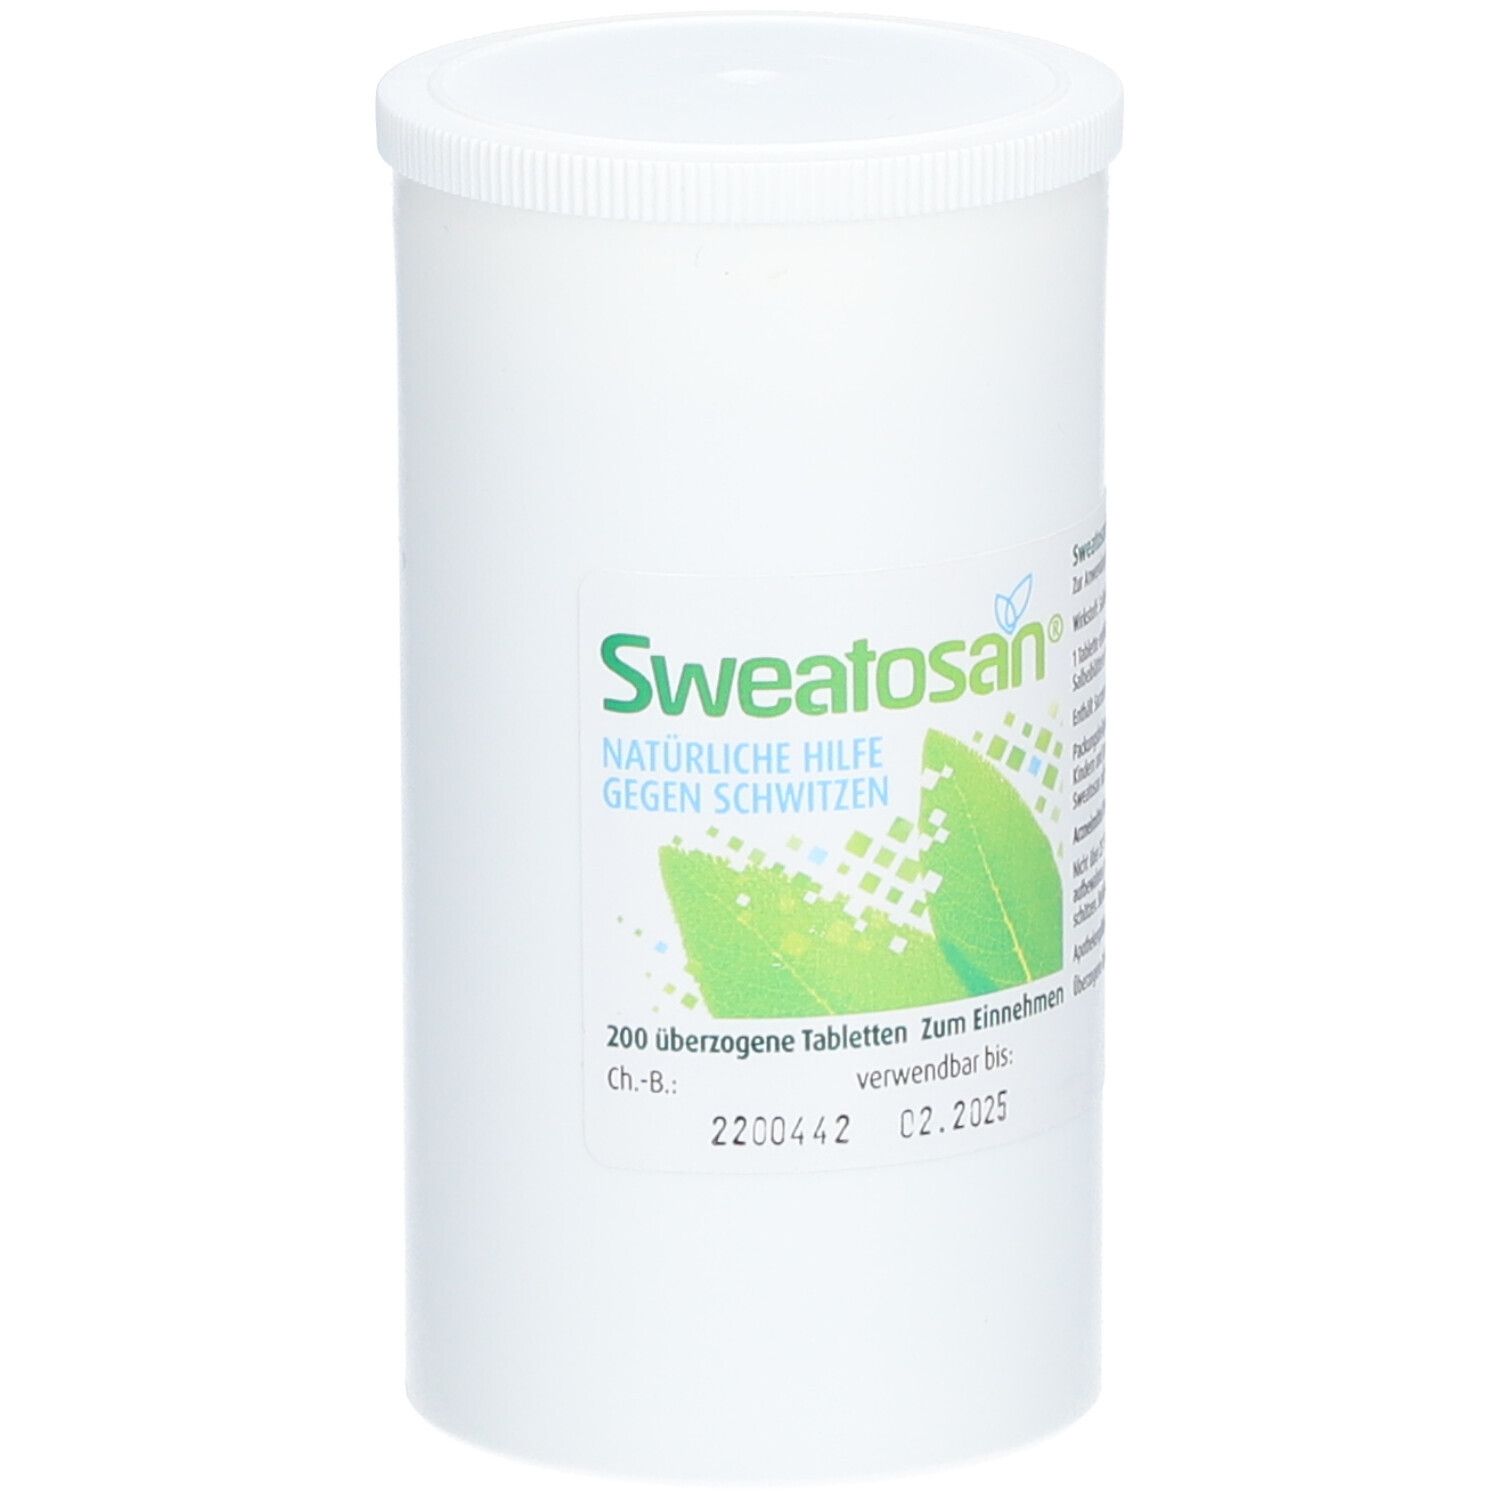 SWEATOSAN® pflanzliches Arzneimittel gegen starkes Schwitzen